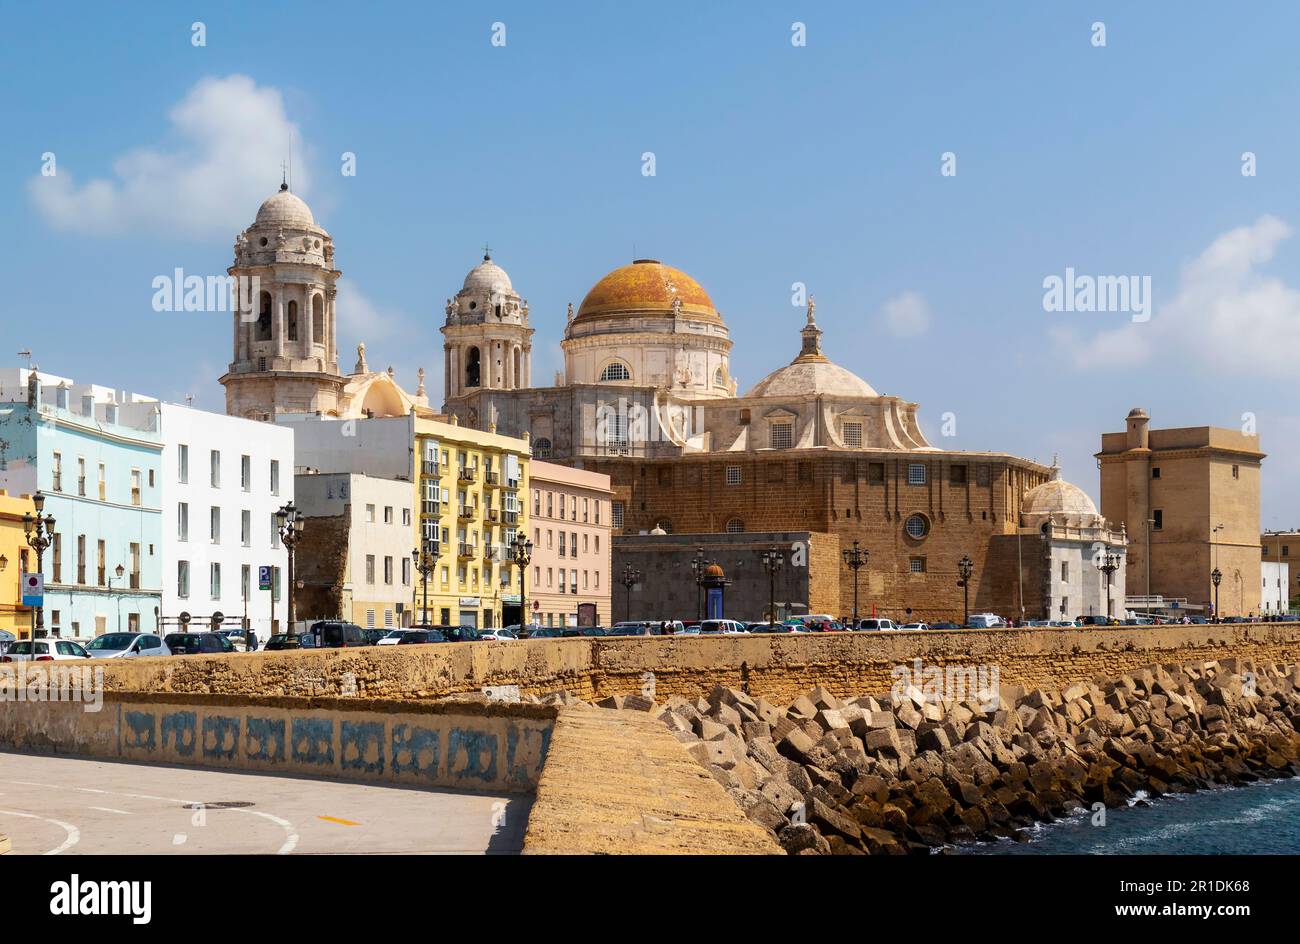 Die barocke Rokoko-Kathedrale von Santa Cruz de Cádiz von der Avenida Campo del Sur aus gesehen, Cádiz, Provinz Cádiz, Costa de la Luz, Andalusien, Spanien. Stockfoto